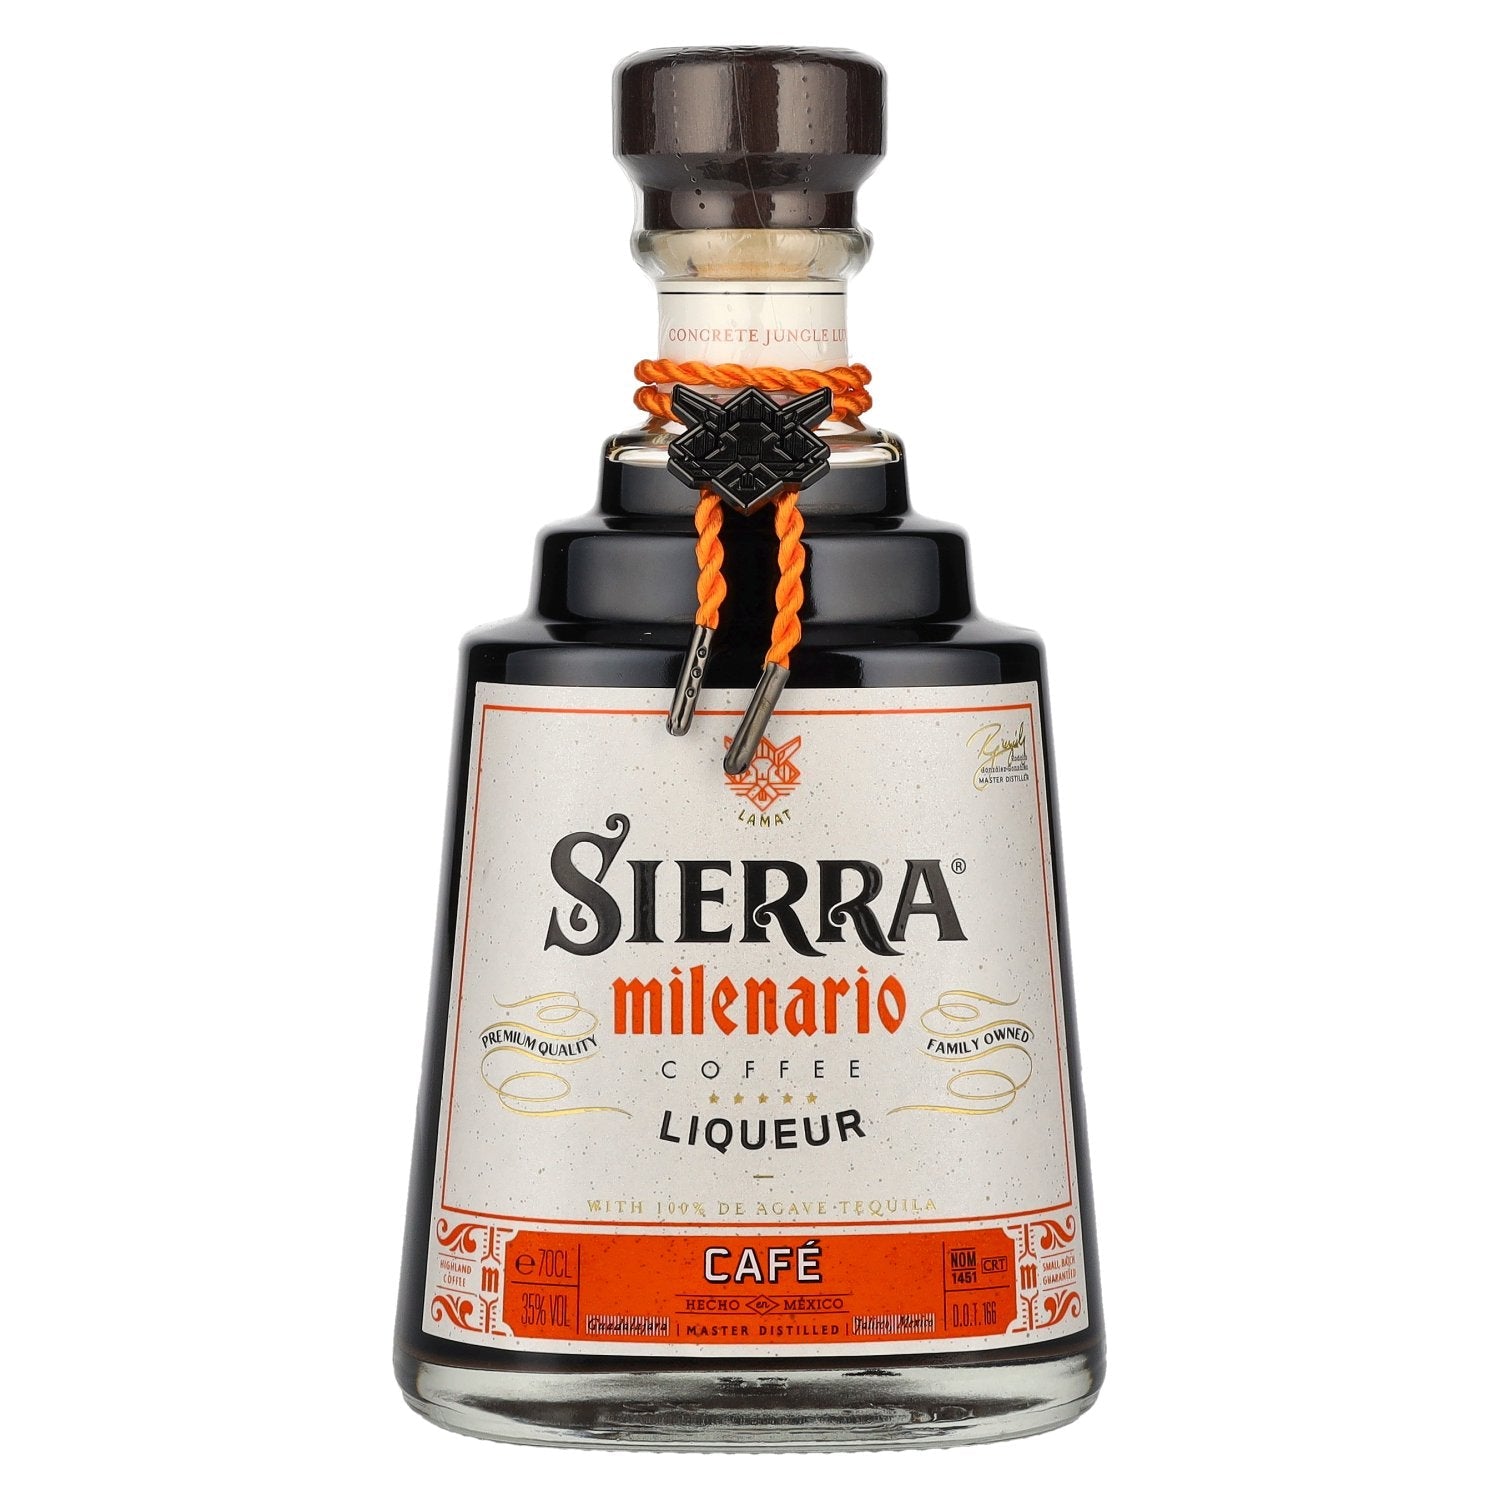 Sierra Milenario CAFÉ Liqueur 35% Vol. 0,7l